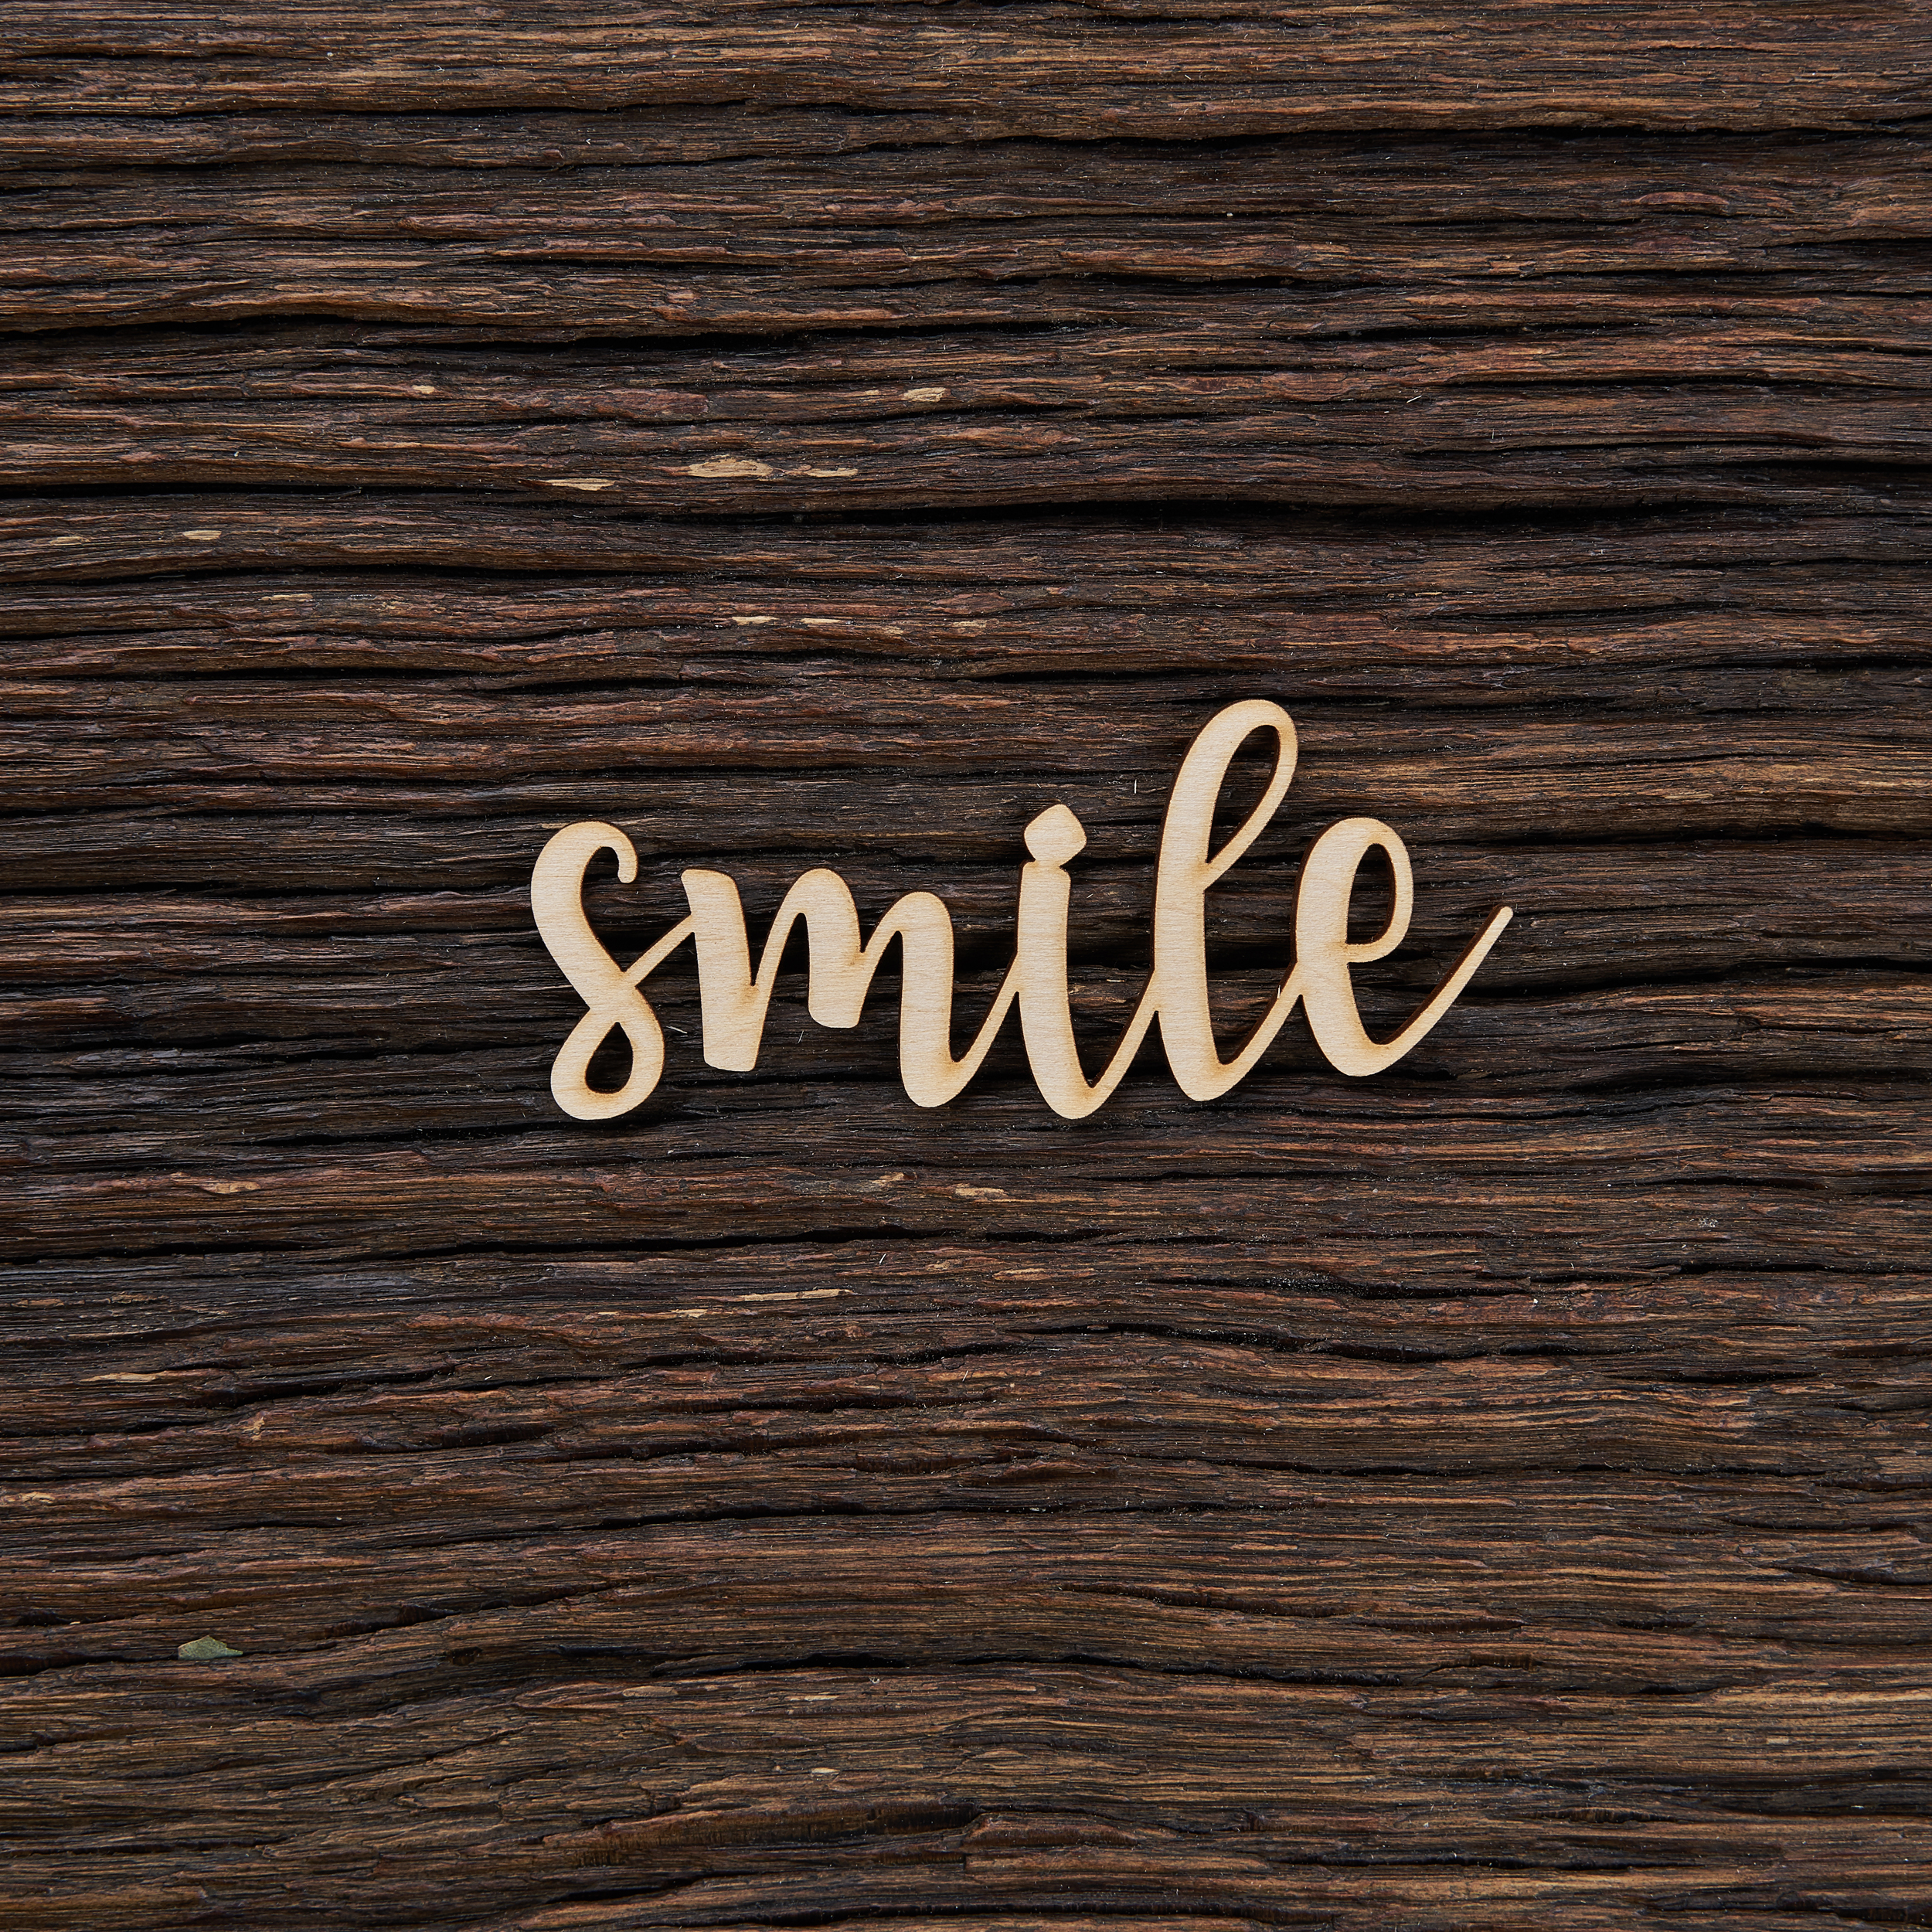 Smile - medinis gaminys, pjautas lazeriu - dekoravimui ir dažymui 